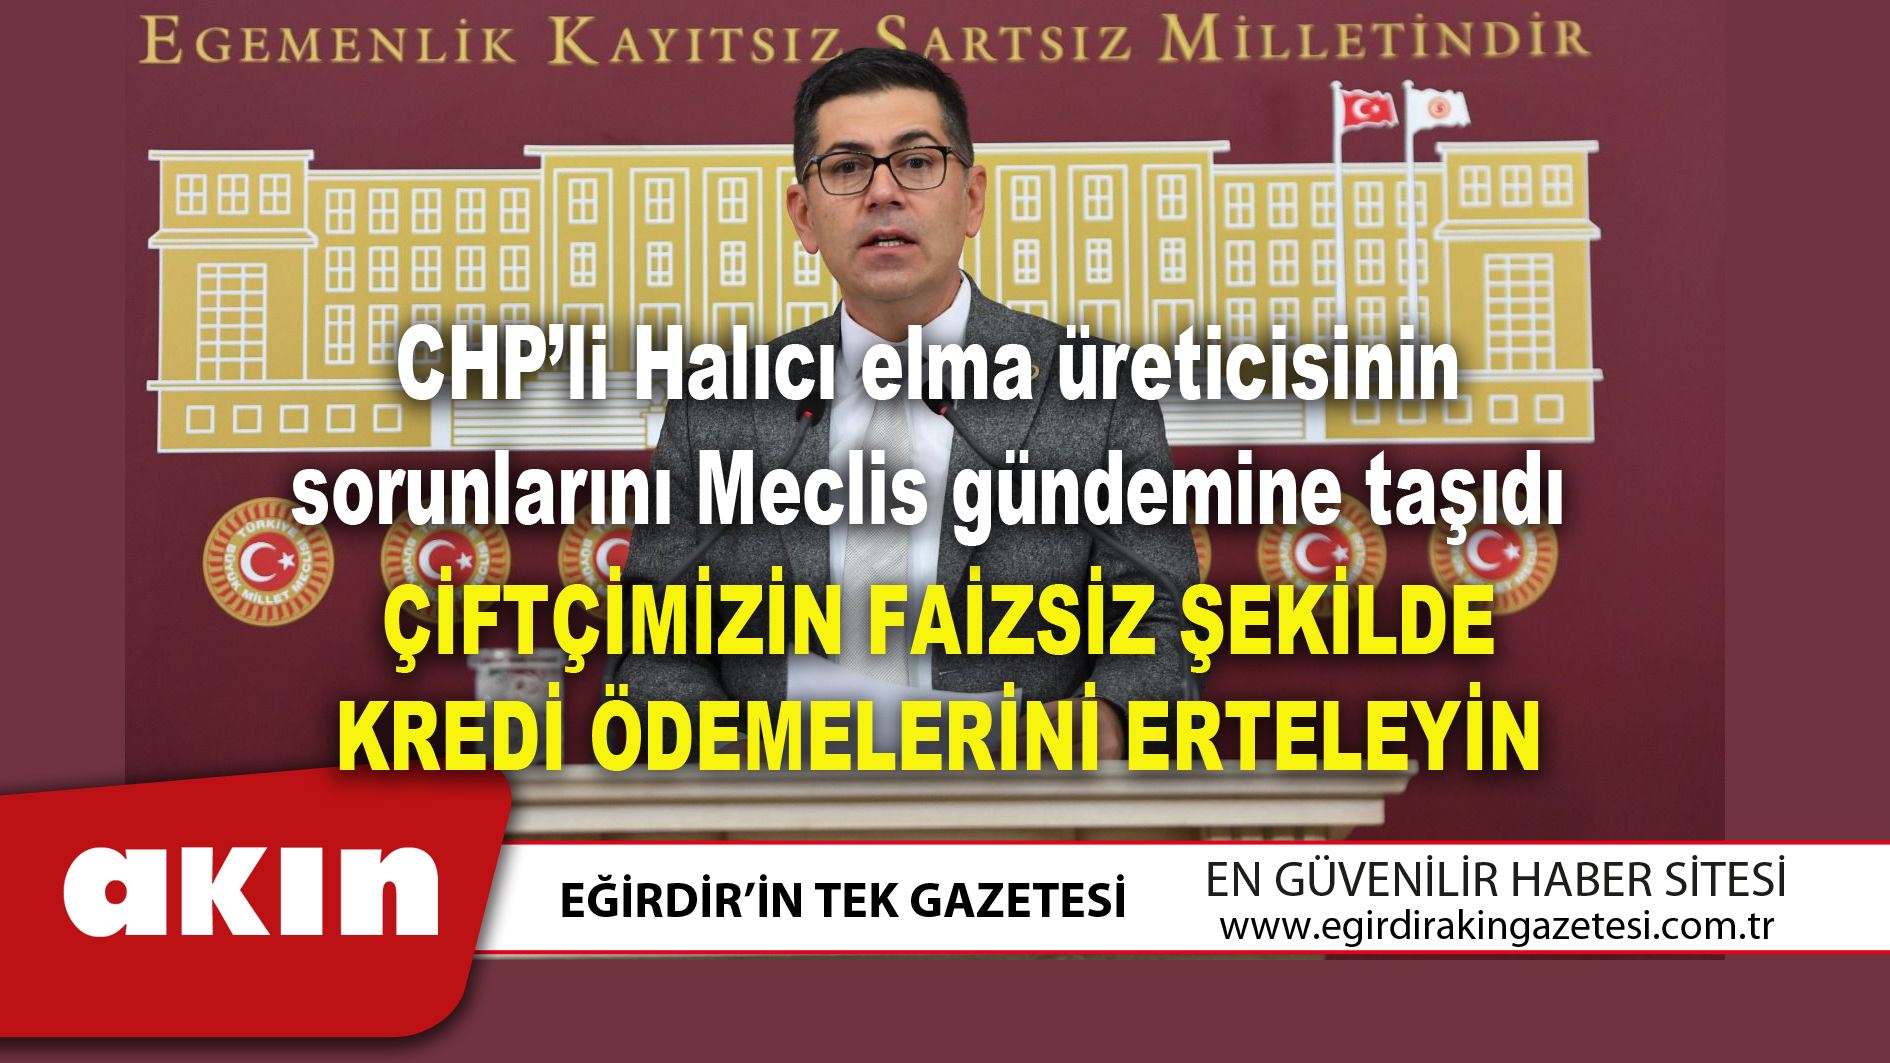 eğirdir haber,akın gazetesi,egirdir haberler,son dakika,CHP’li Halıcı elma üreticisinin sorunlarını Meclis gündemine taşıdı